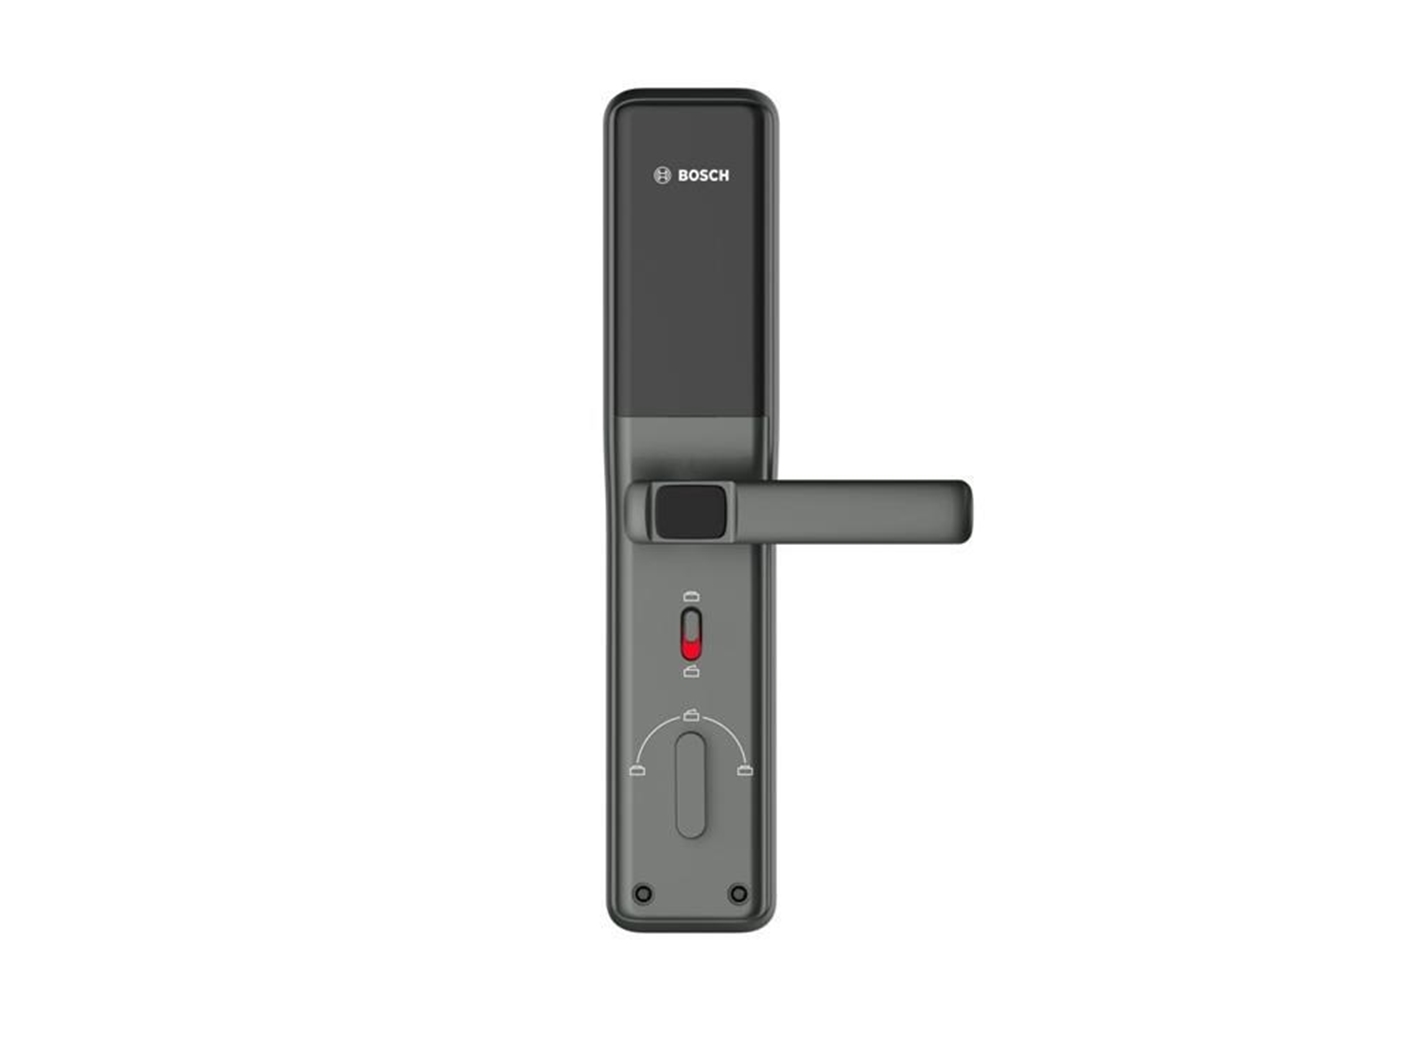 Hình ảnh của Khóa cửa điện tử Bosch ID-30BKB màu xám đen